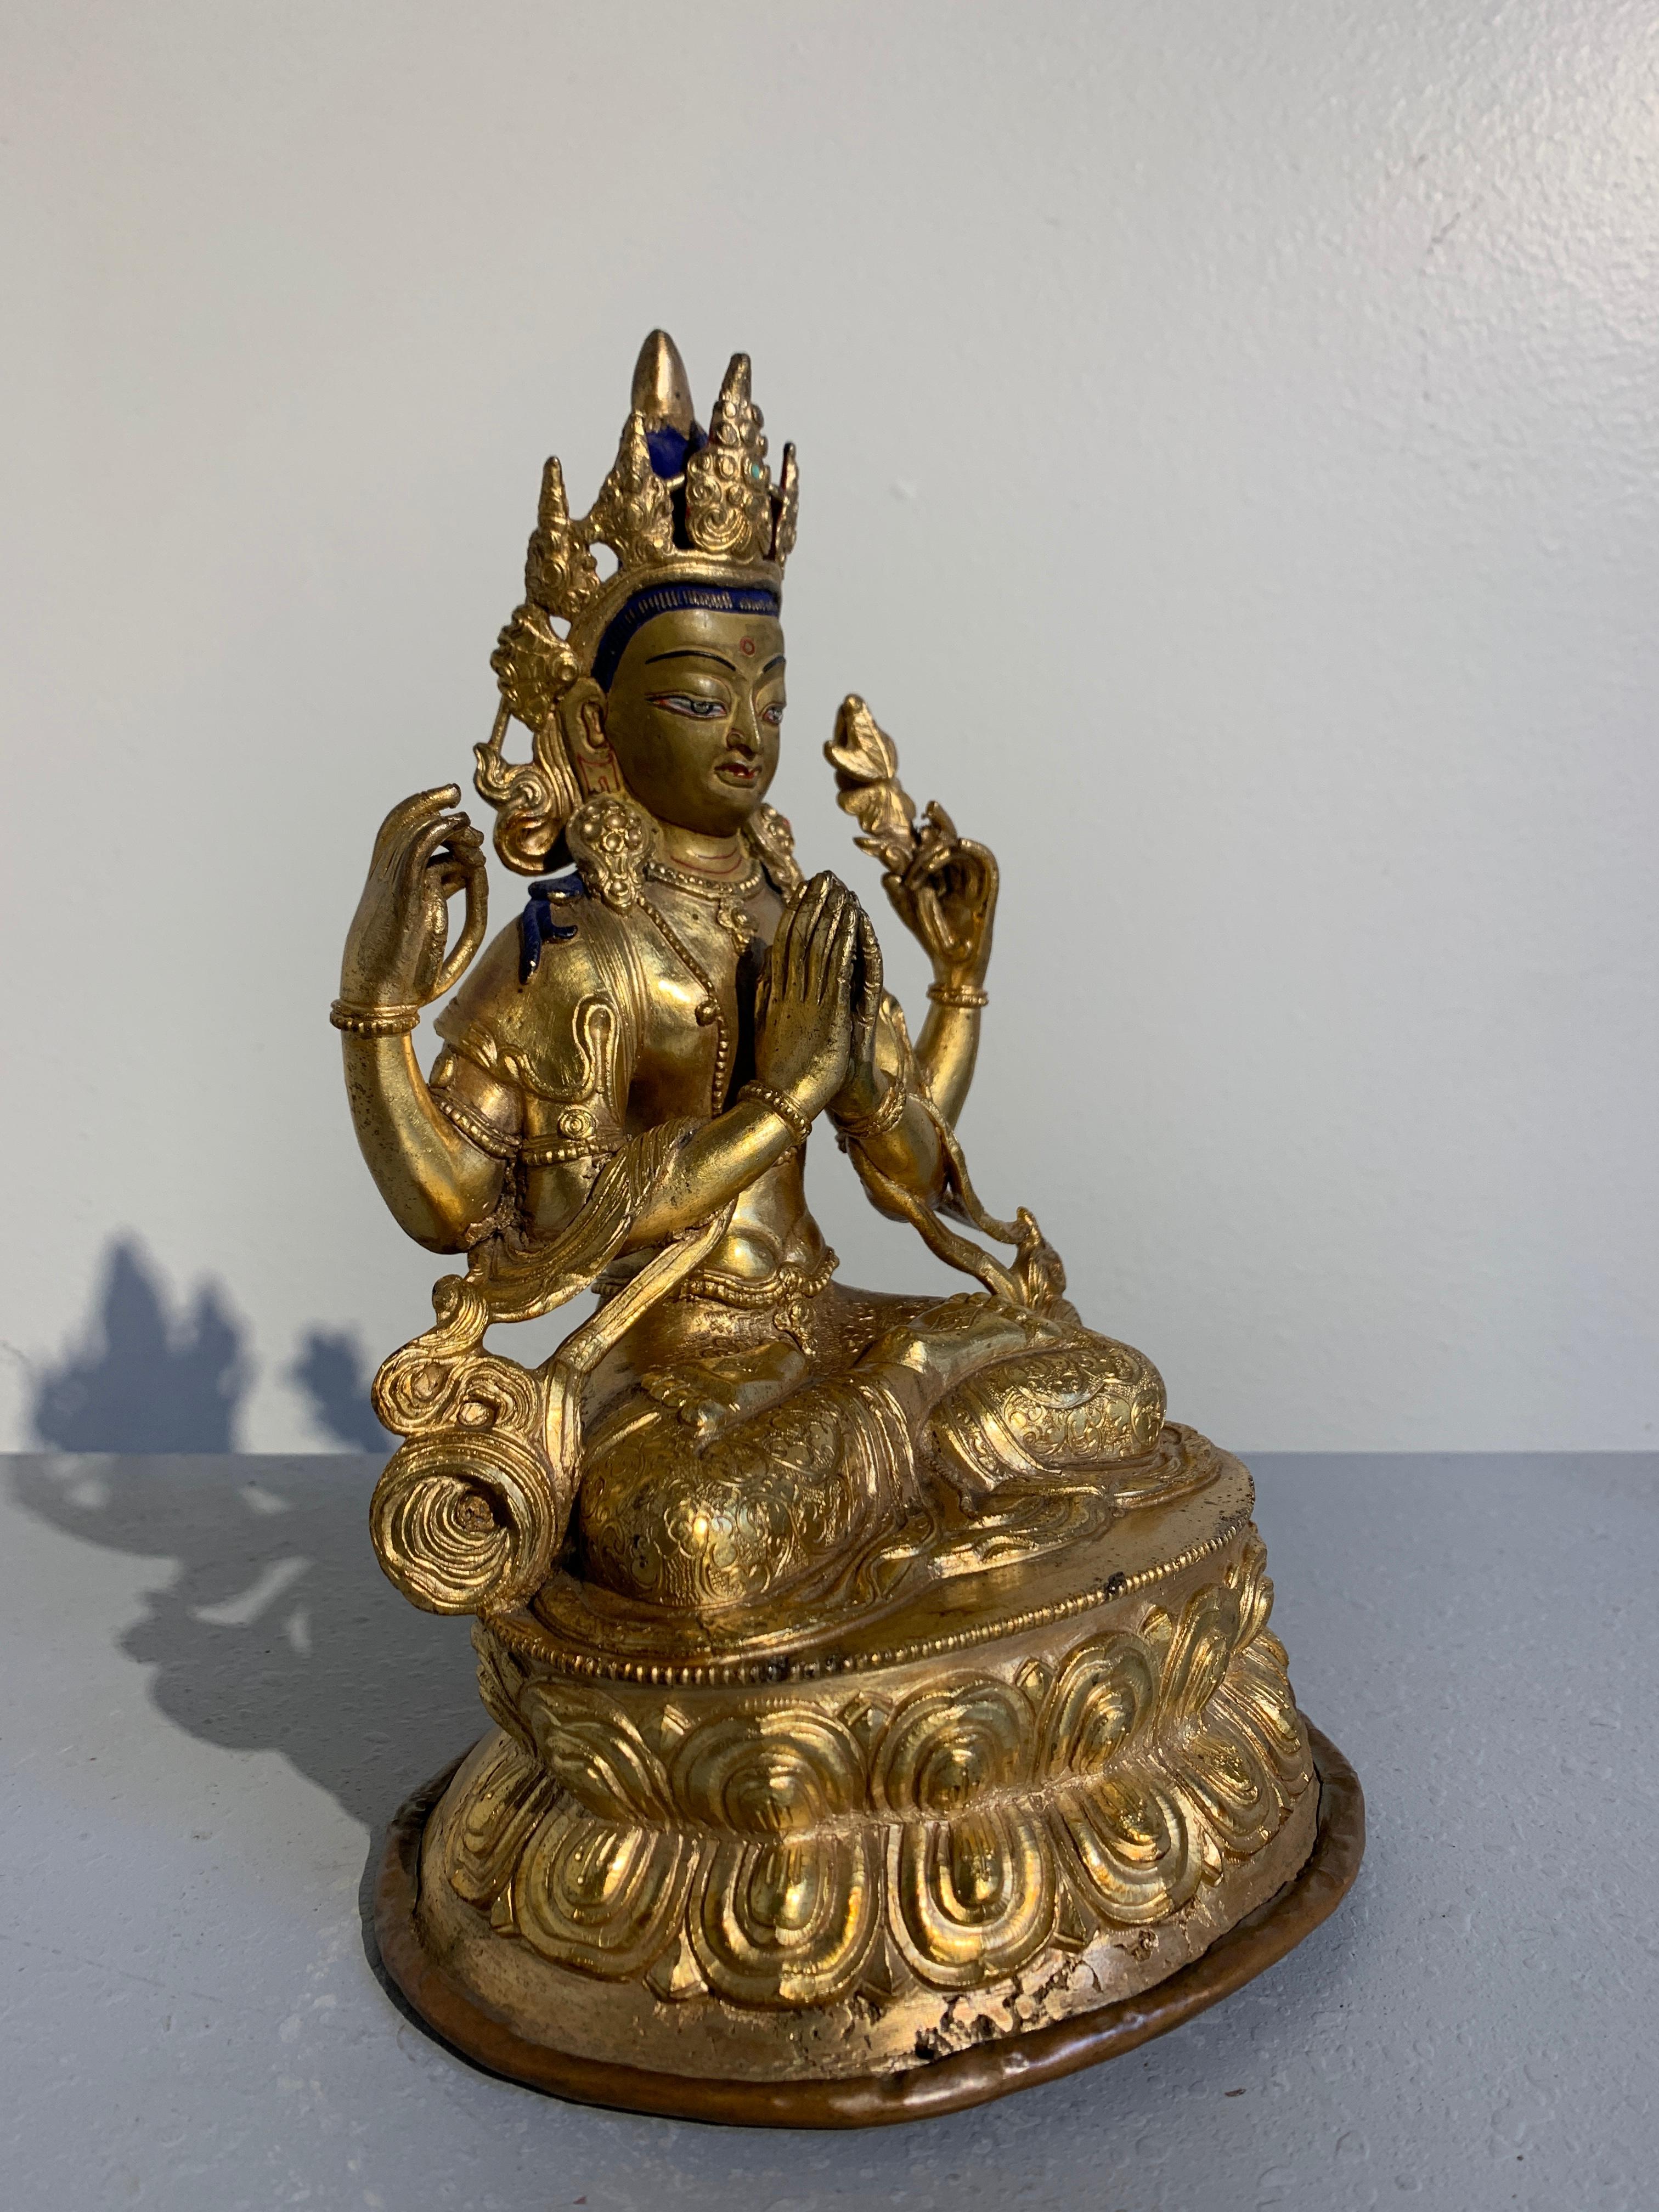 Belle sculpture vintage en bronze doré du début au milieu du 20e siècle représentant la divinité bouddhiste Avalokiteshvara dans sa forme à quatre bras, connue sous le nom de Chaturbuhja, ou Chenrezig au Tibet.

Chenrezig, une forme